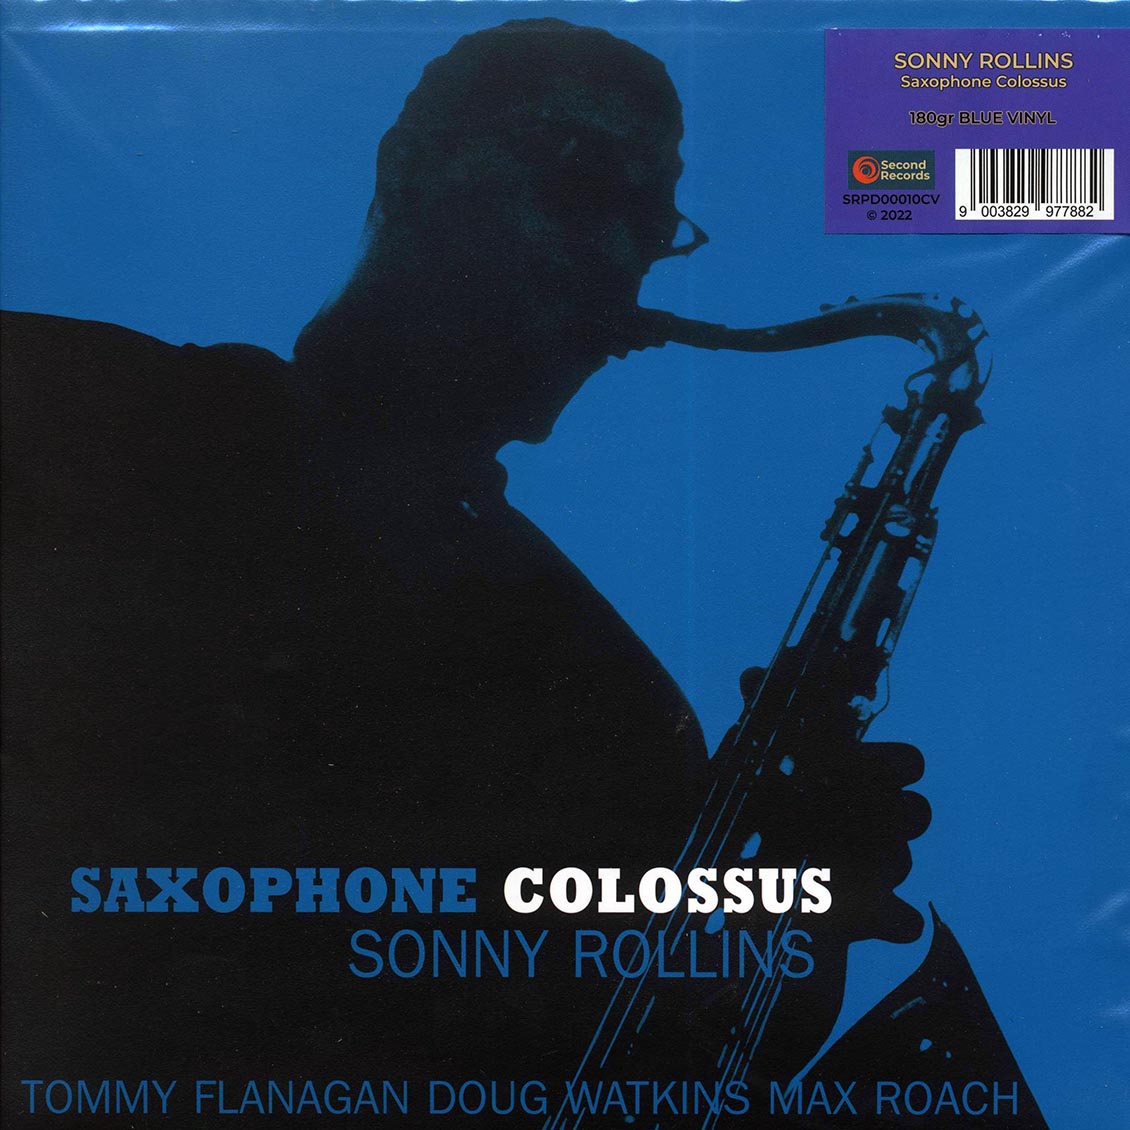 Sonny Rollins - Saxophone Colossus (180g) (blue vinyl) - Vinyl LP